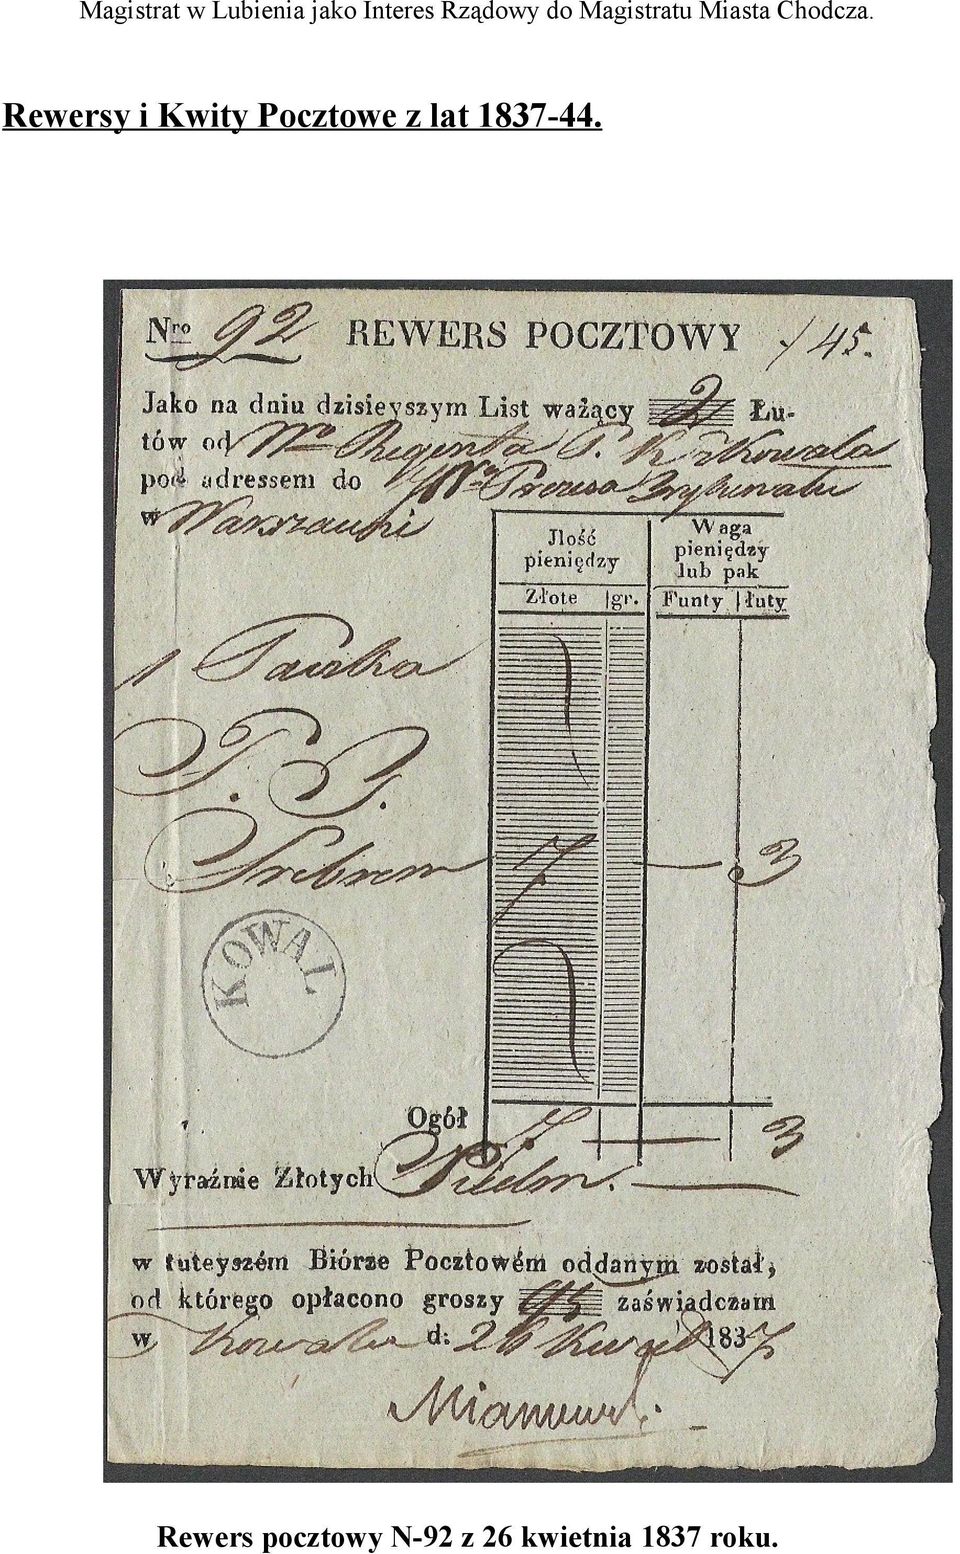 Rewersy i Kwity Pocztowe z lat 1837-44.